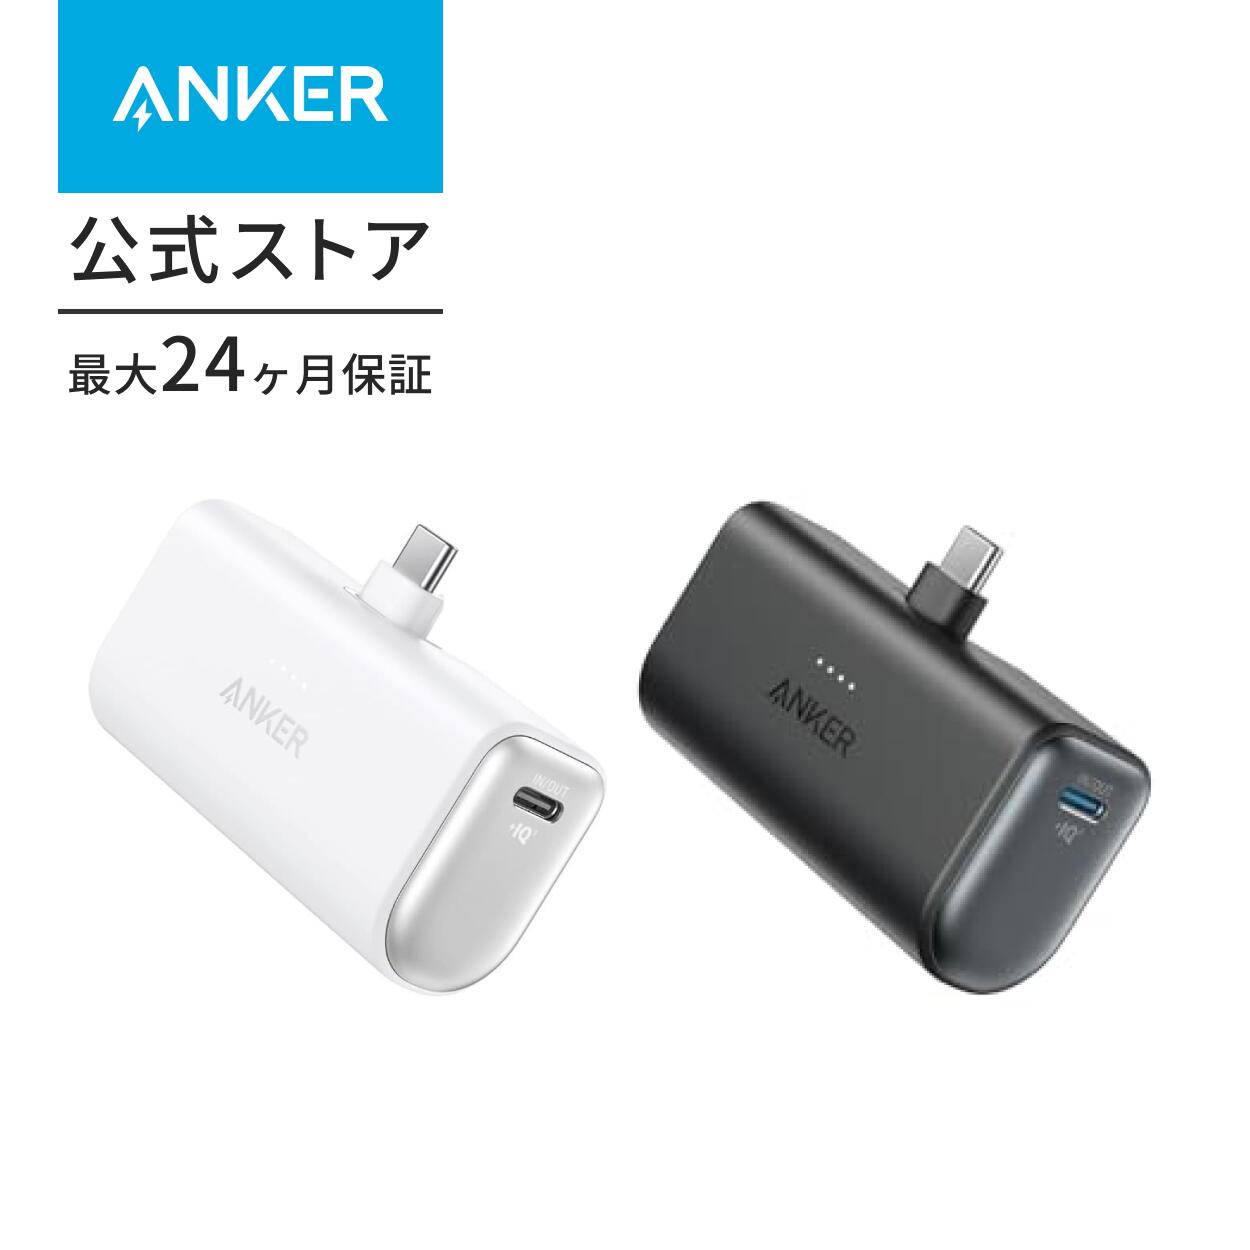 【一部あす楽対応】Anker 621 Power Bank 